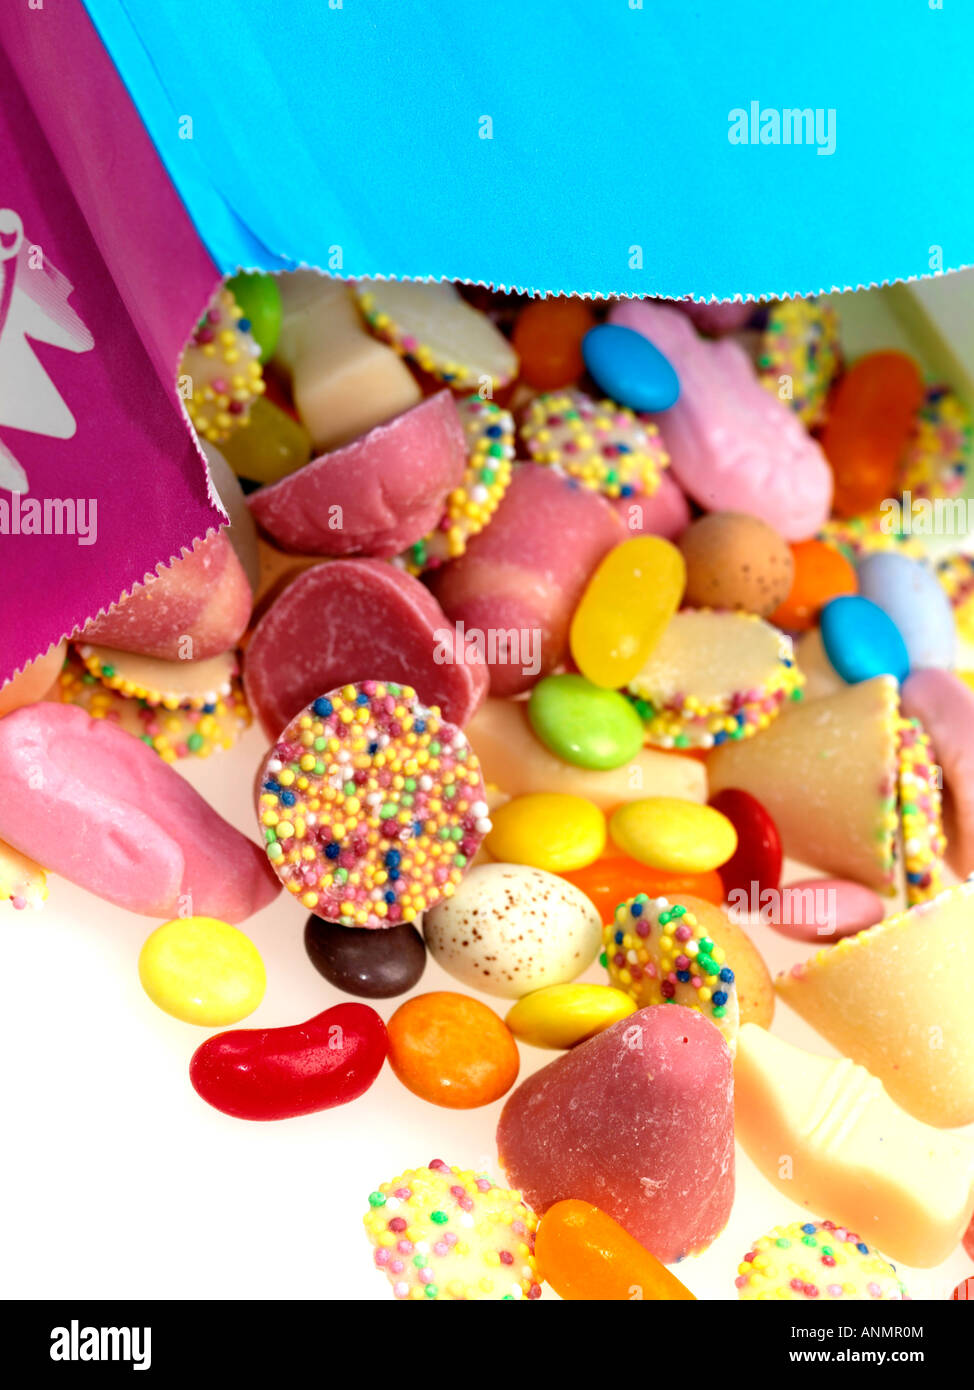 Sortierte bunte Kinder- Liebling aussuchen, Süßigkeiten Süßwaren vor einem weißen Hintergrund ohne Menschen und einen Freistellungspfad isoliert Stockfoto